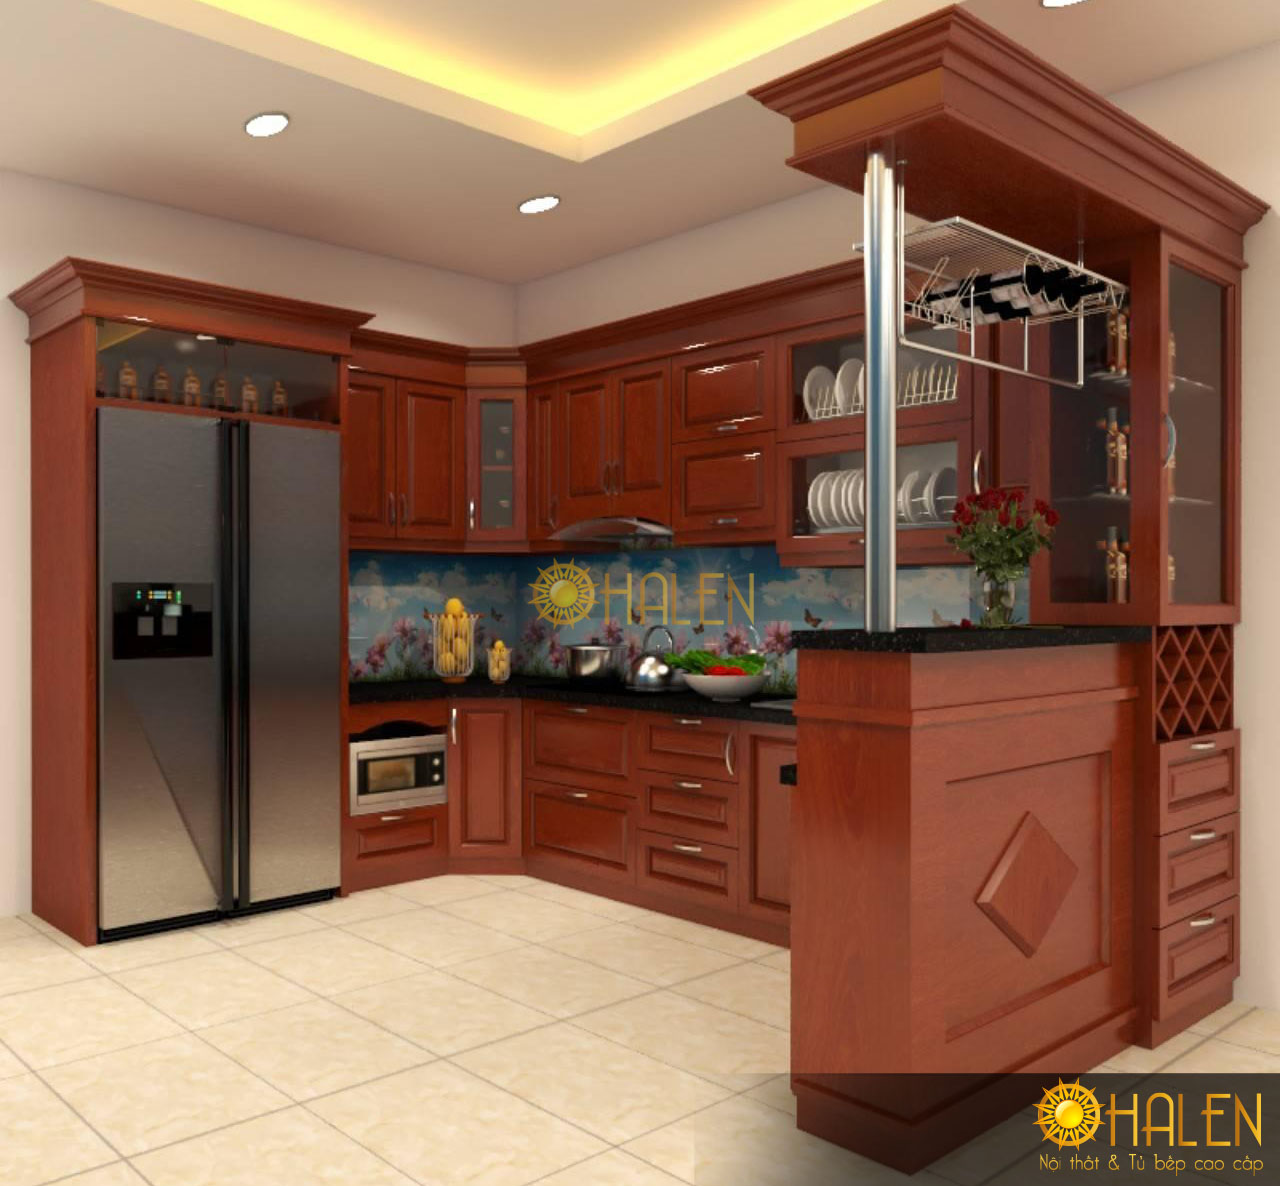 Mẫu thiết kế tủ bếp đẹp 2020 gỗ xoan đào - nội thất OHALEN